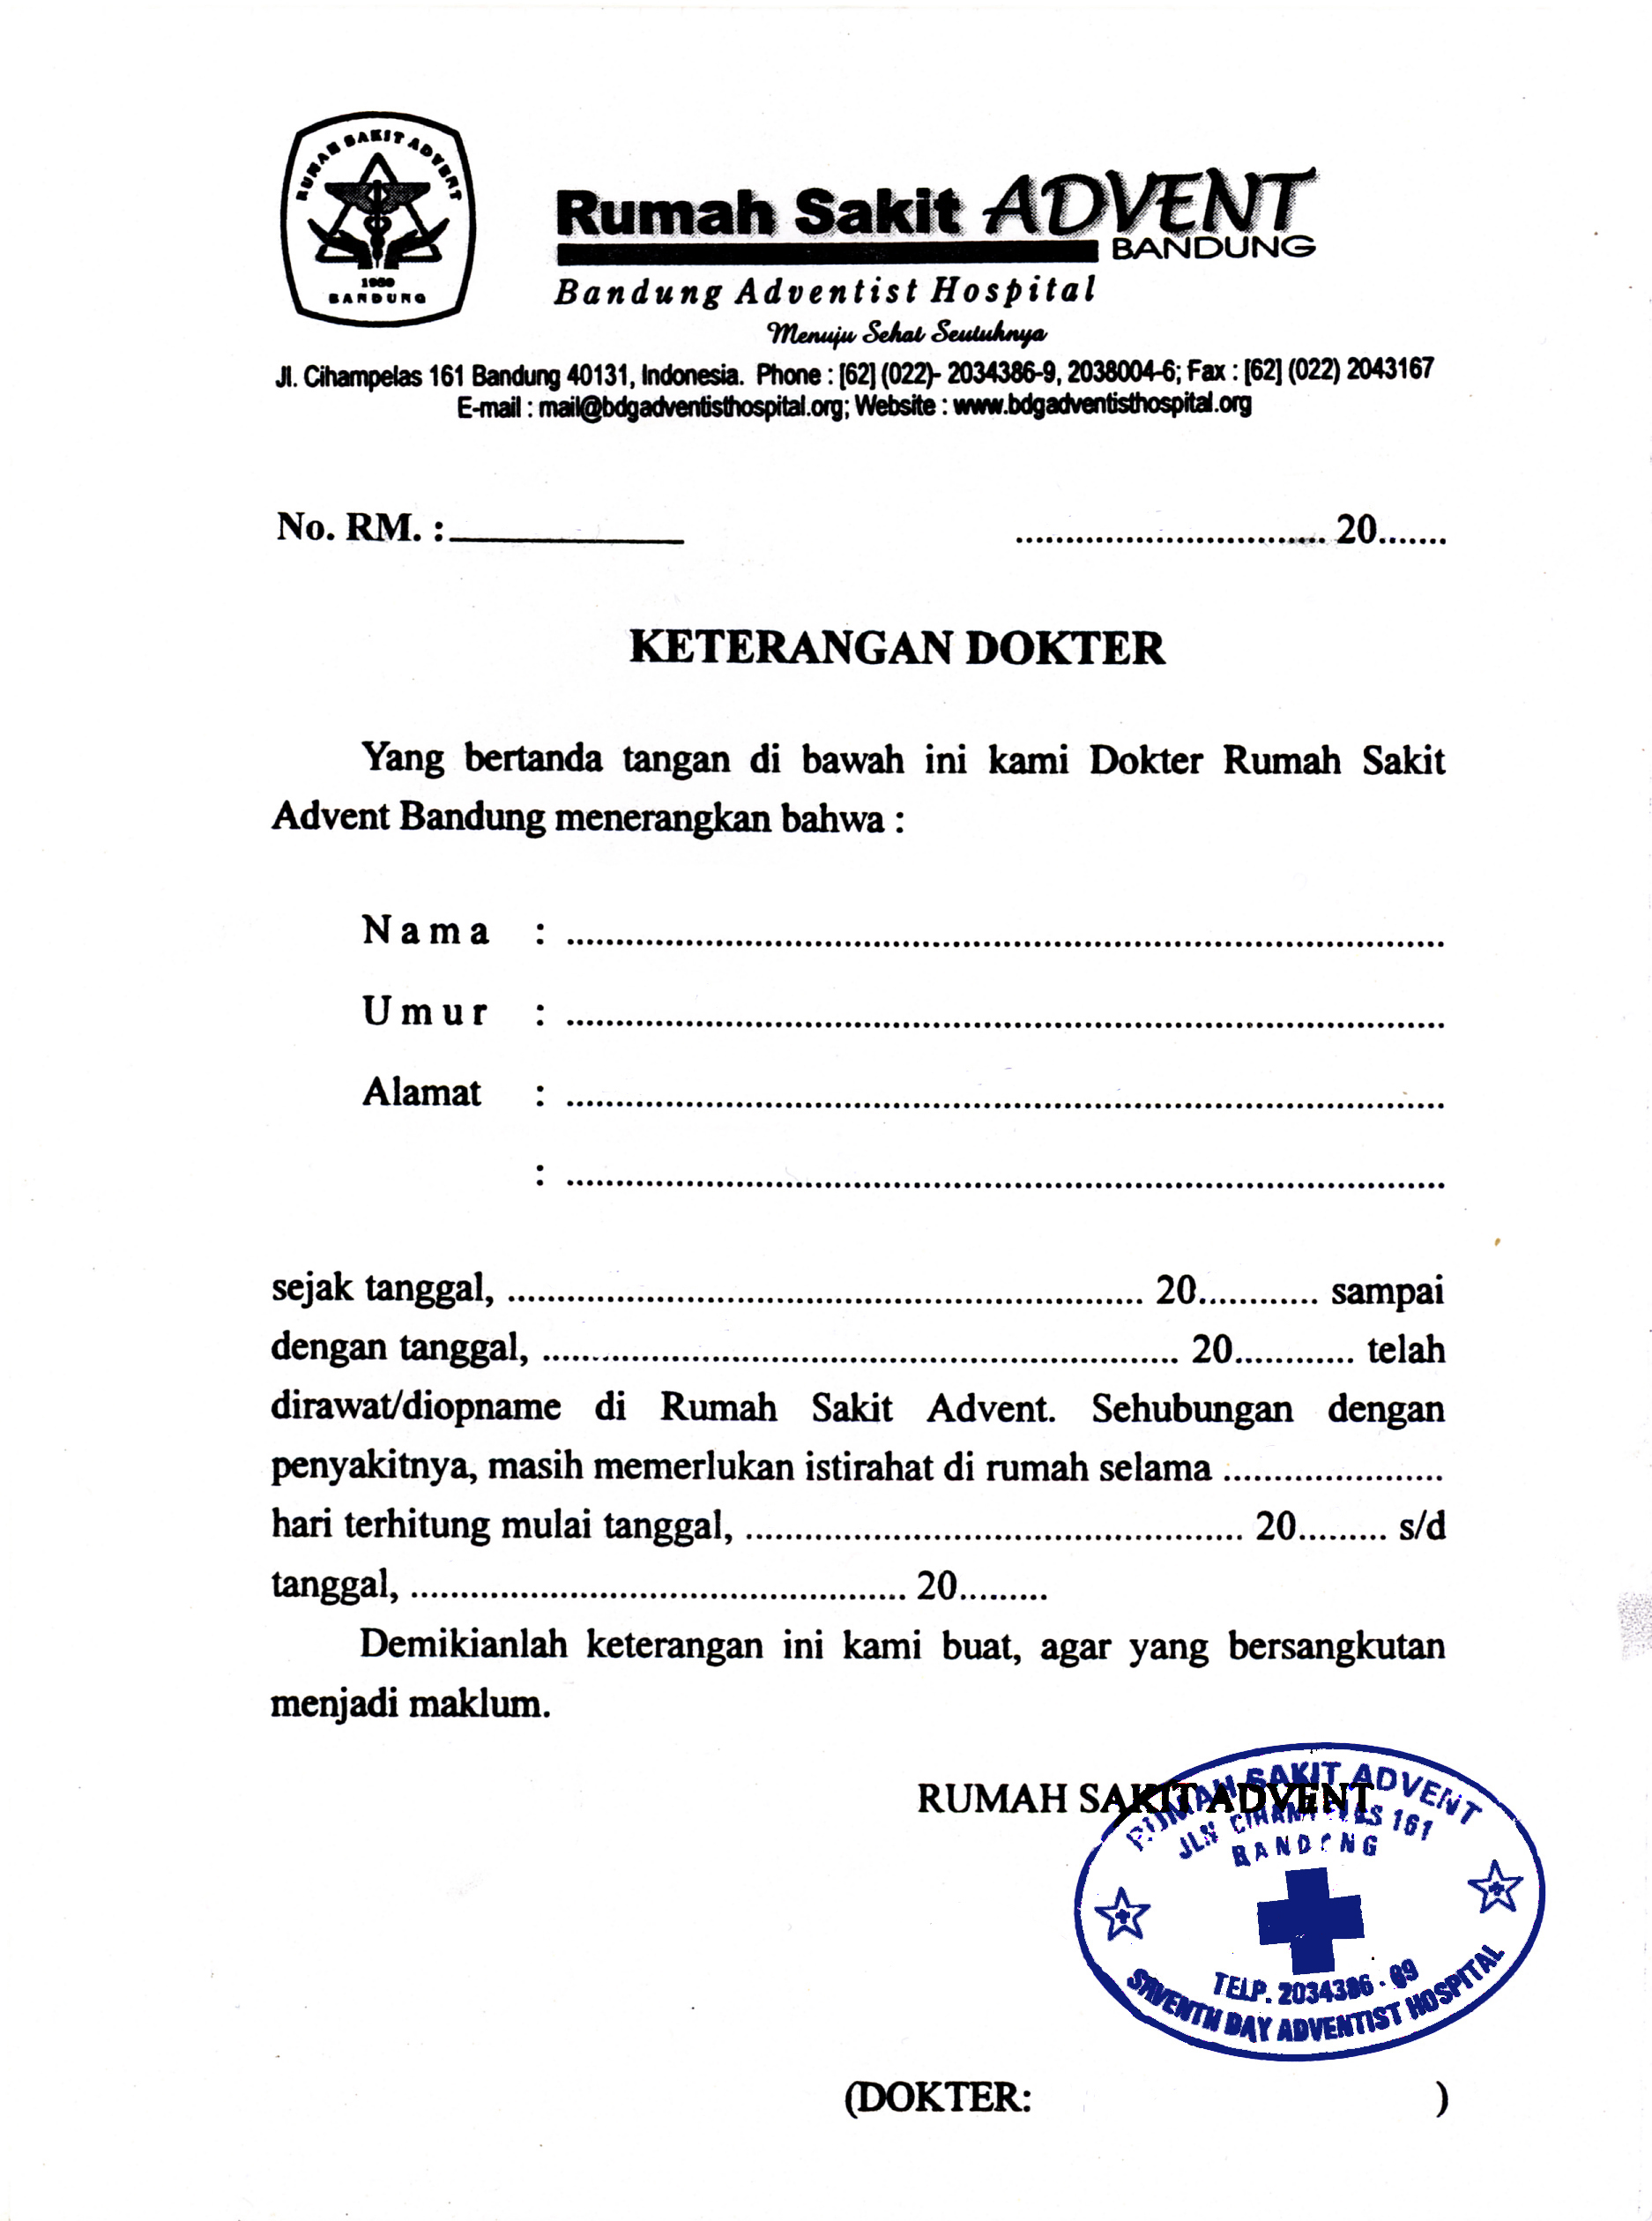 Contoh Surat Dokter Asli Bandung Nusagates